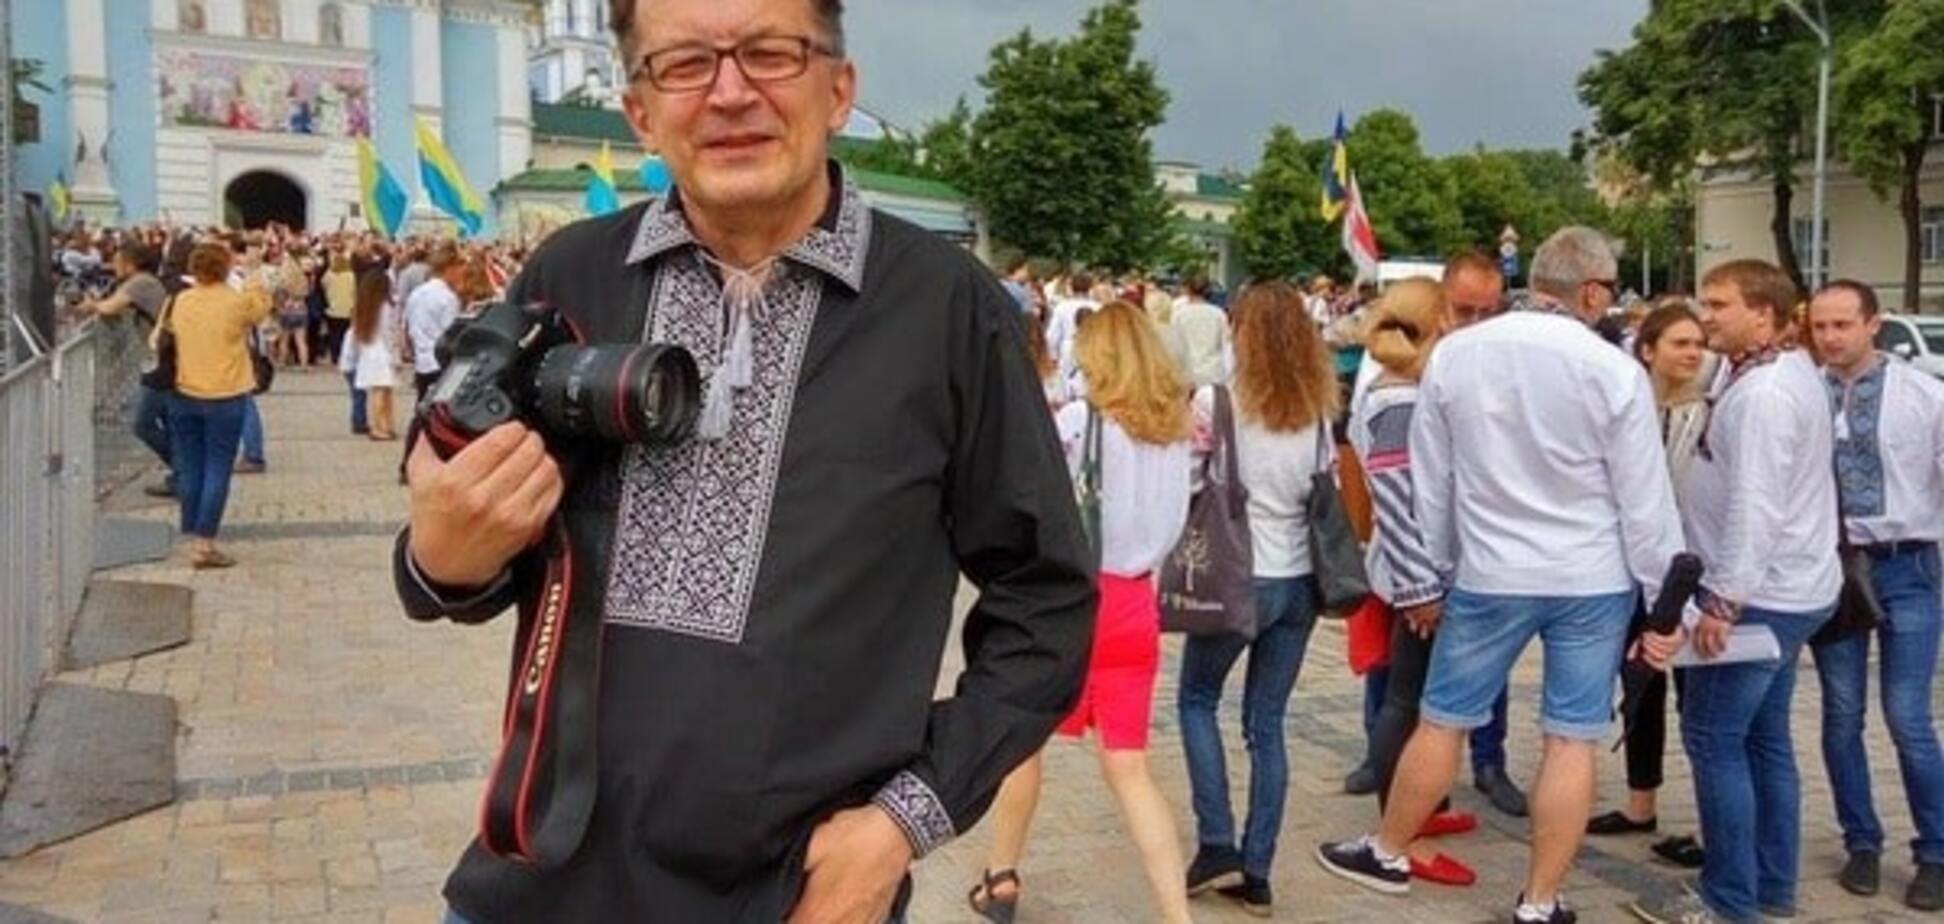 И 'бандеровцы' не съели: российский блогер прогулялся по Киеву в вышиванке. Опубликованы фото